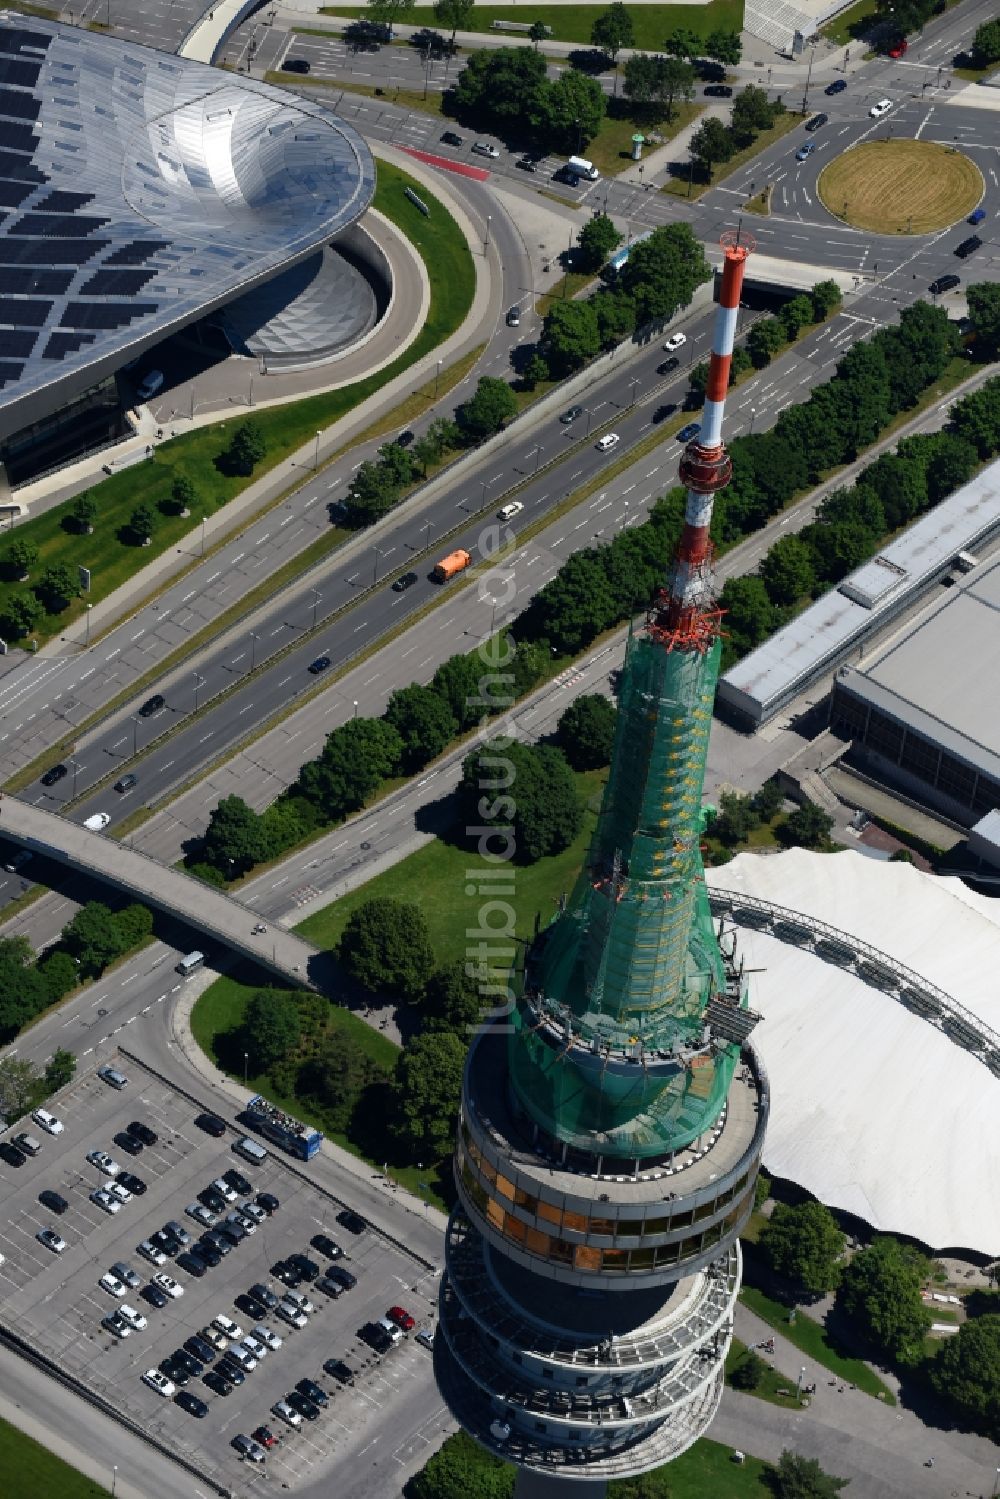 München von oben - Fernmeldeturm und Fernsehturm in München im Bundesland Bayern, Deutschland